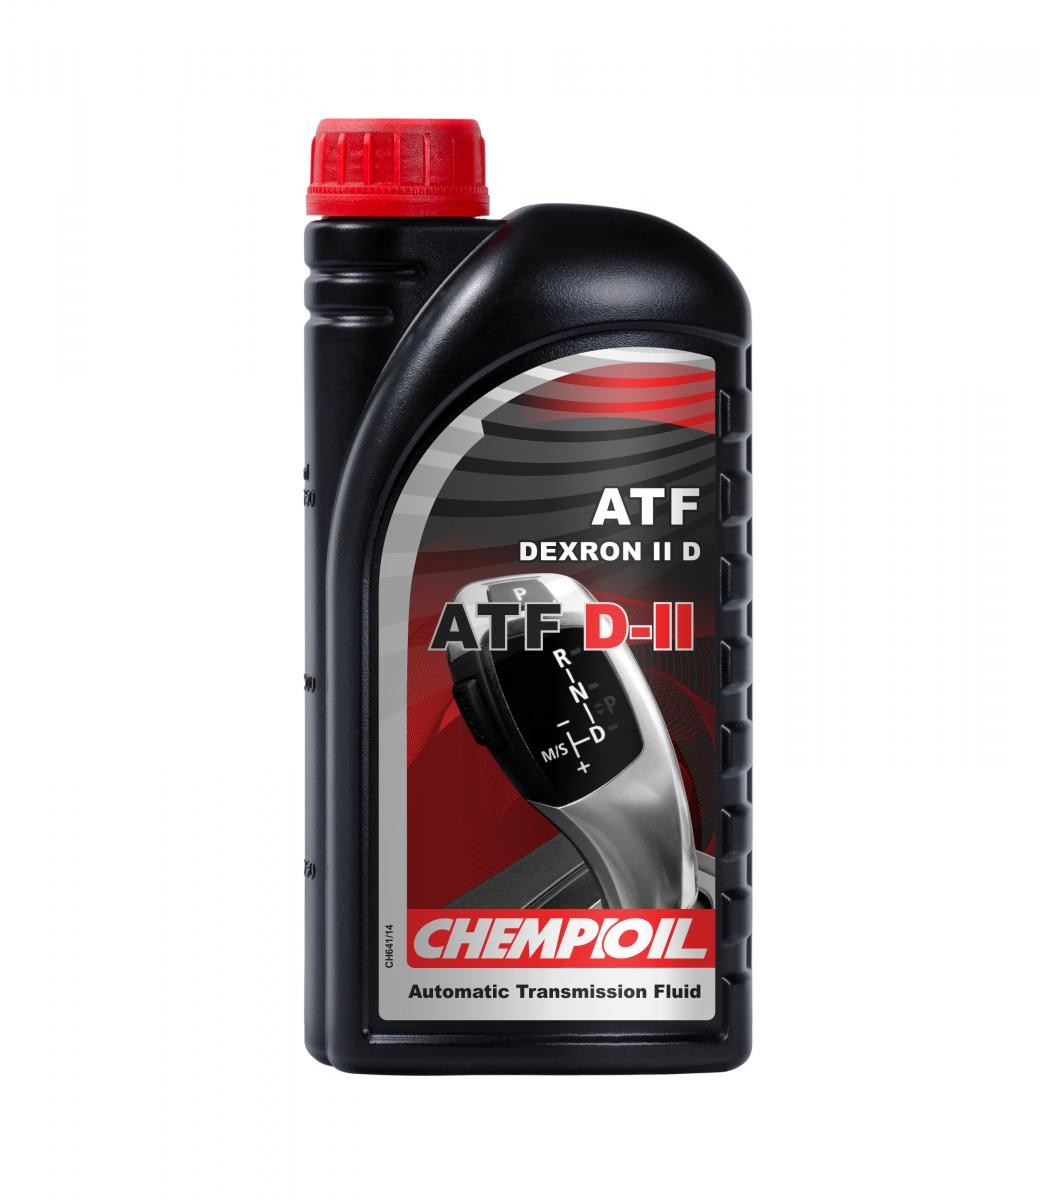 CHEMPIOIL ATF, D-II CH8901-1 Automatic transmission fluid ATF IID, 1l, red